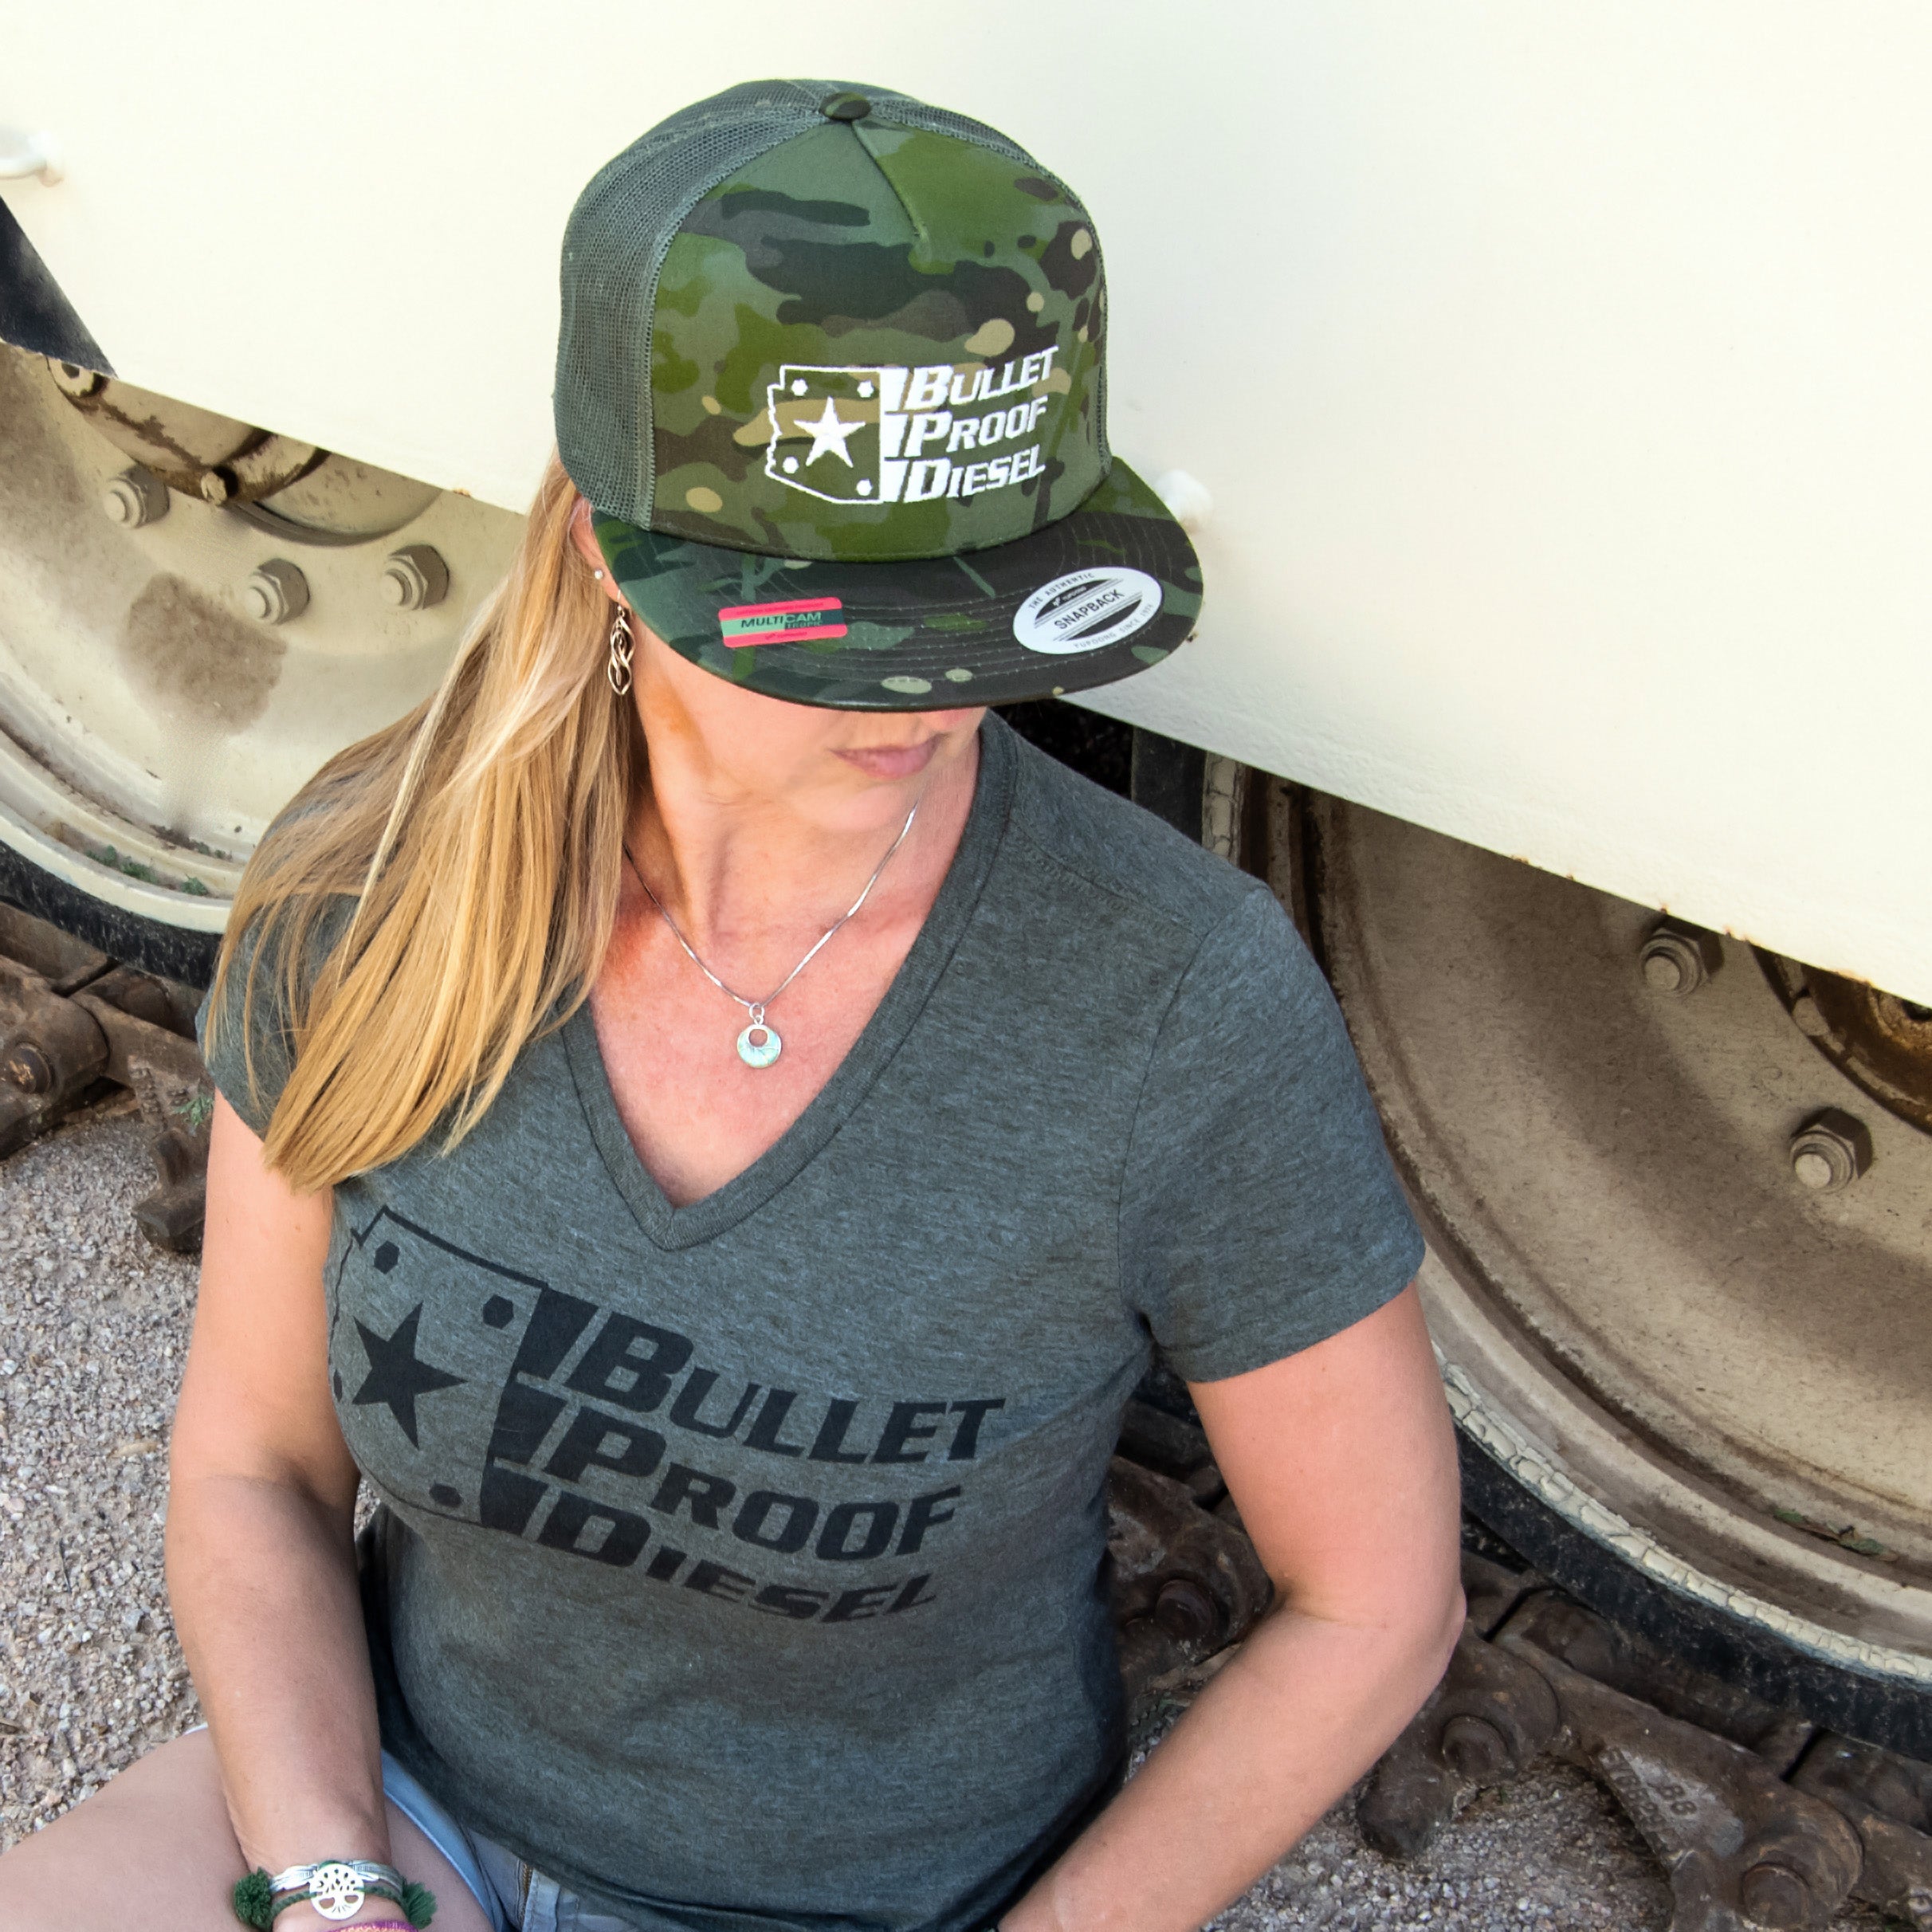 Bullet Proof Womens V-Neck T-Shirt